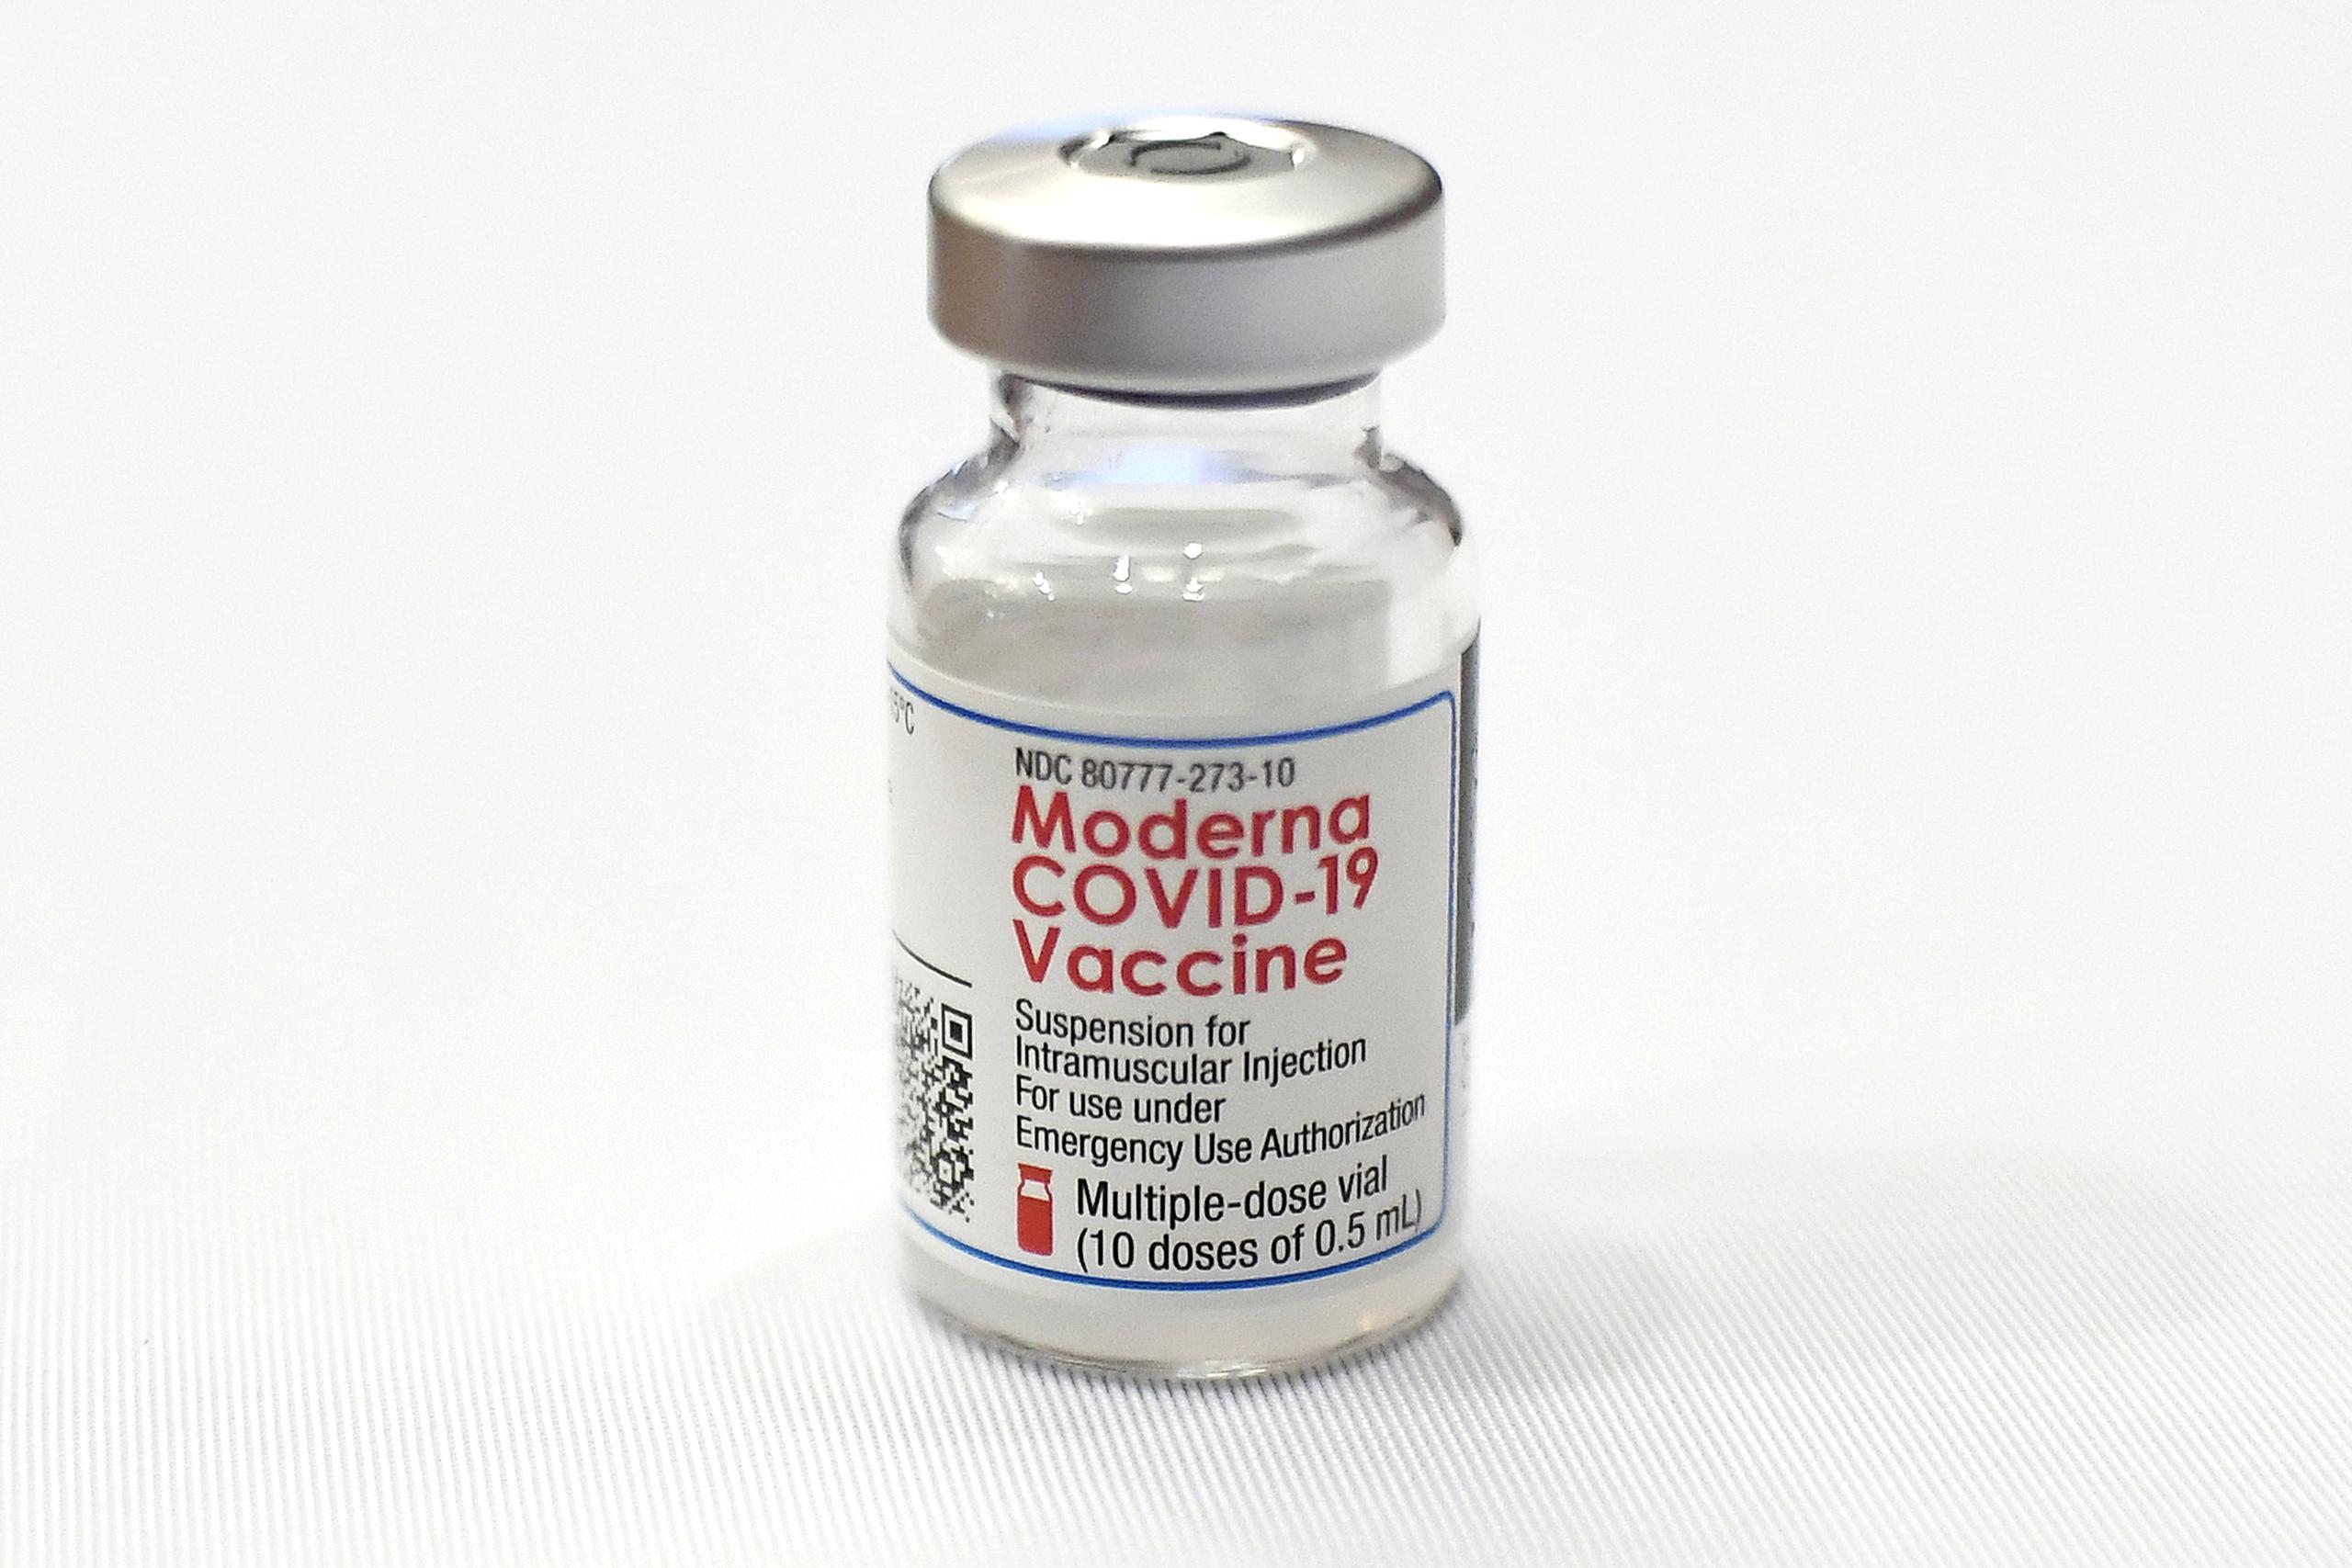 Los CDC han dicho que las vacunas contra el COVID-19 pueden causar efectos secundarios por unos días como fiebre, escalofríos, dolor de cabeza, hinchazón o cansancio, “los cuales son signos normales de que tu cuerpo está desarrollando una protección”.